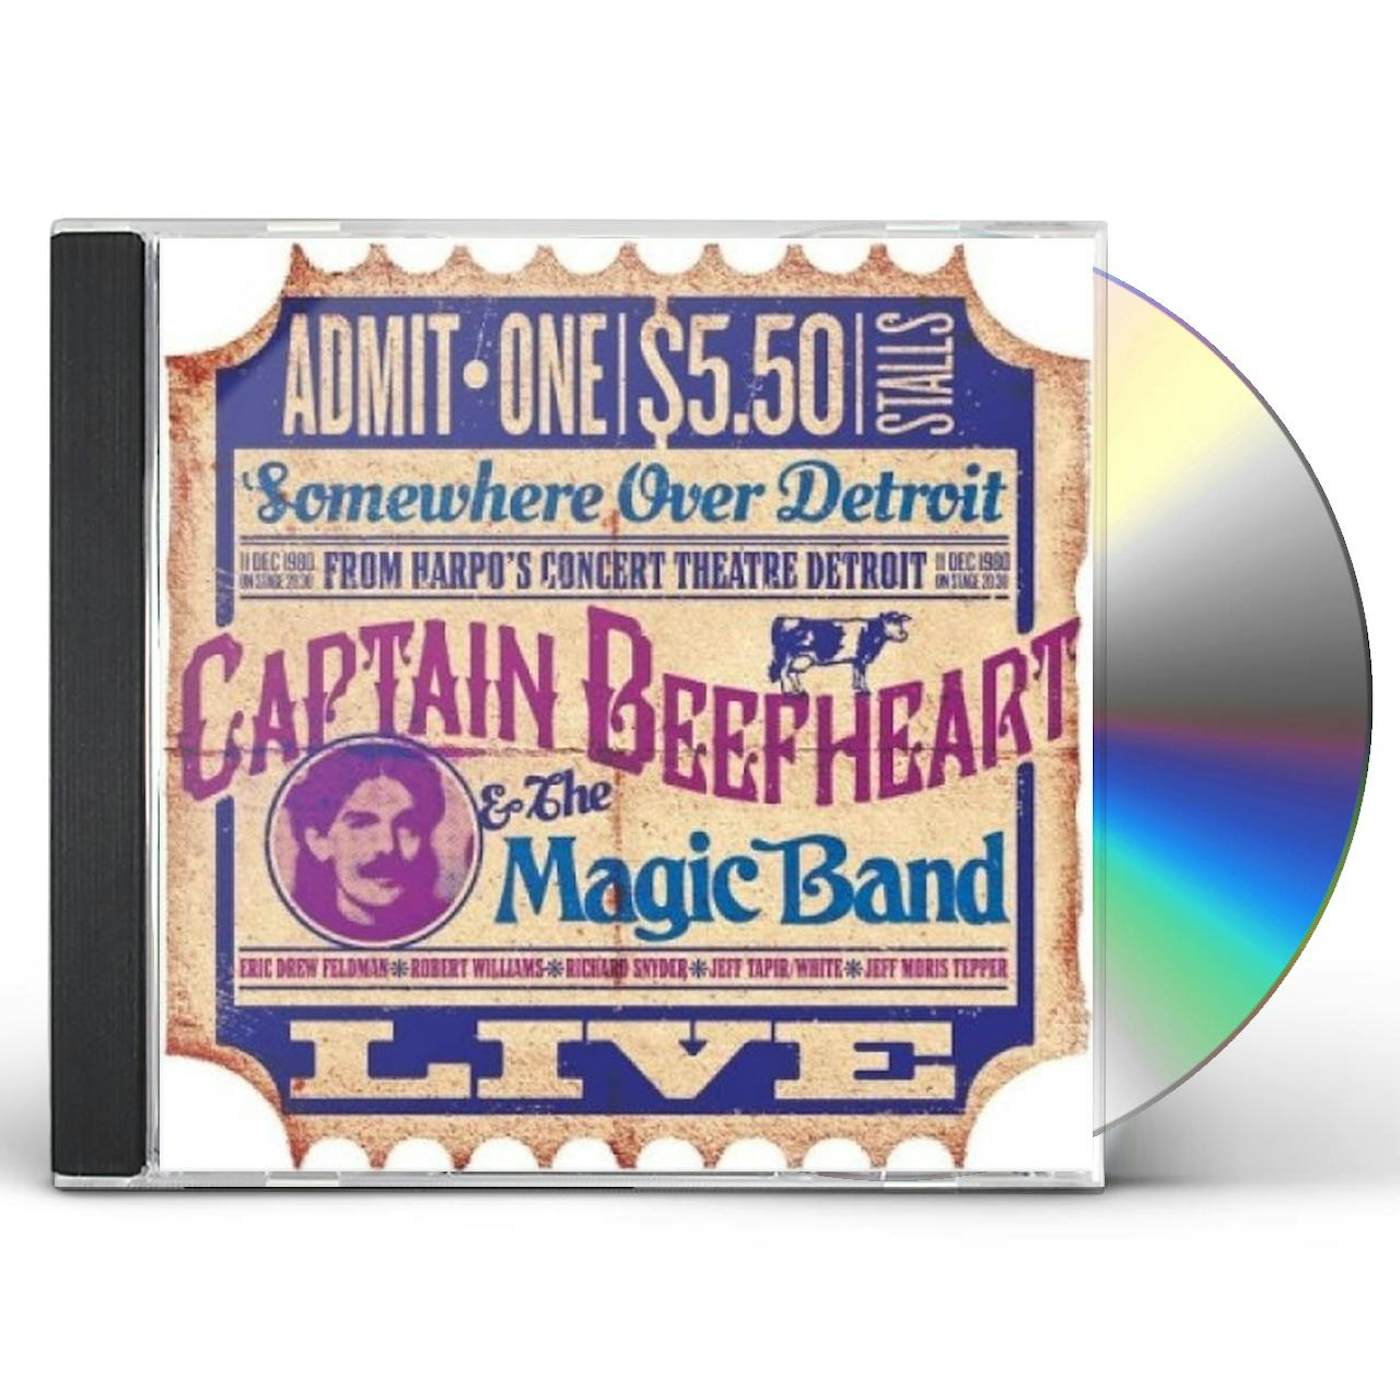 Captain Beefheart & His Magic Band HARPOS DETROIT DEC 11TH 1980 CD